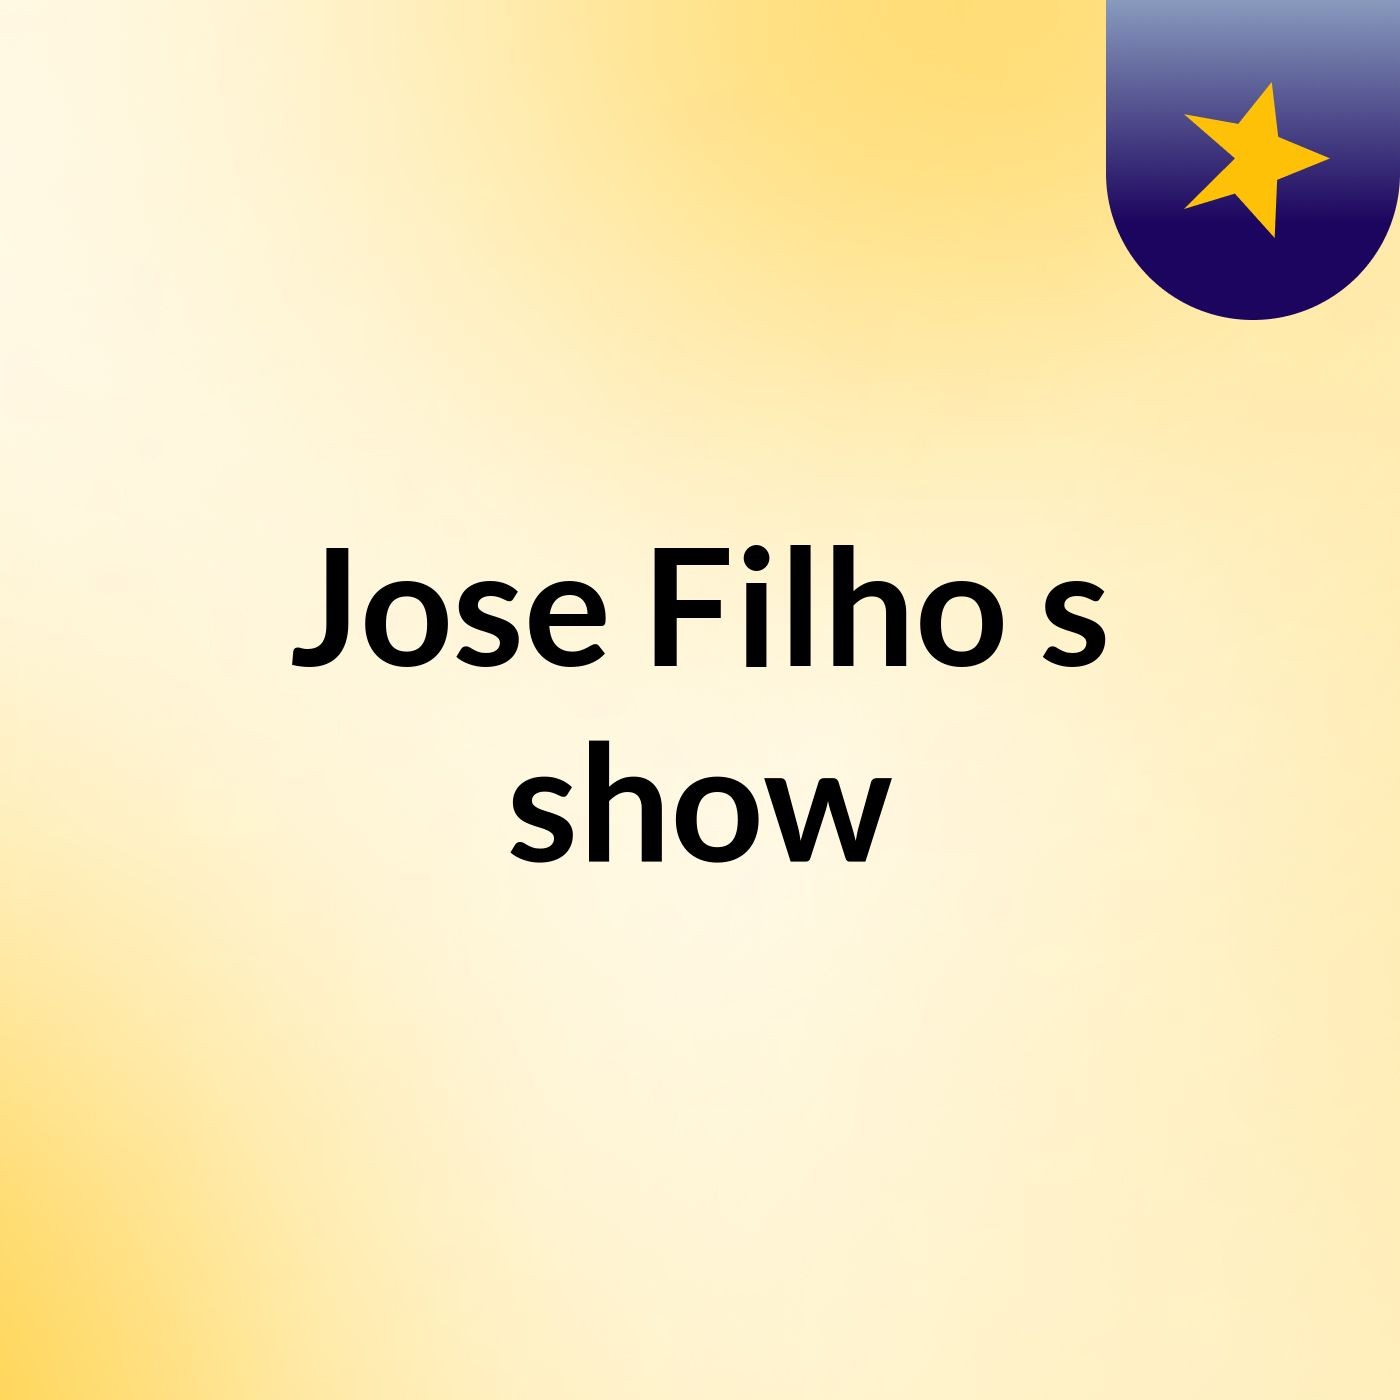 Jose Filho's show